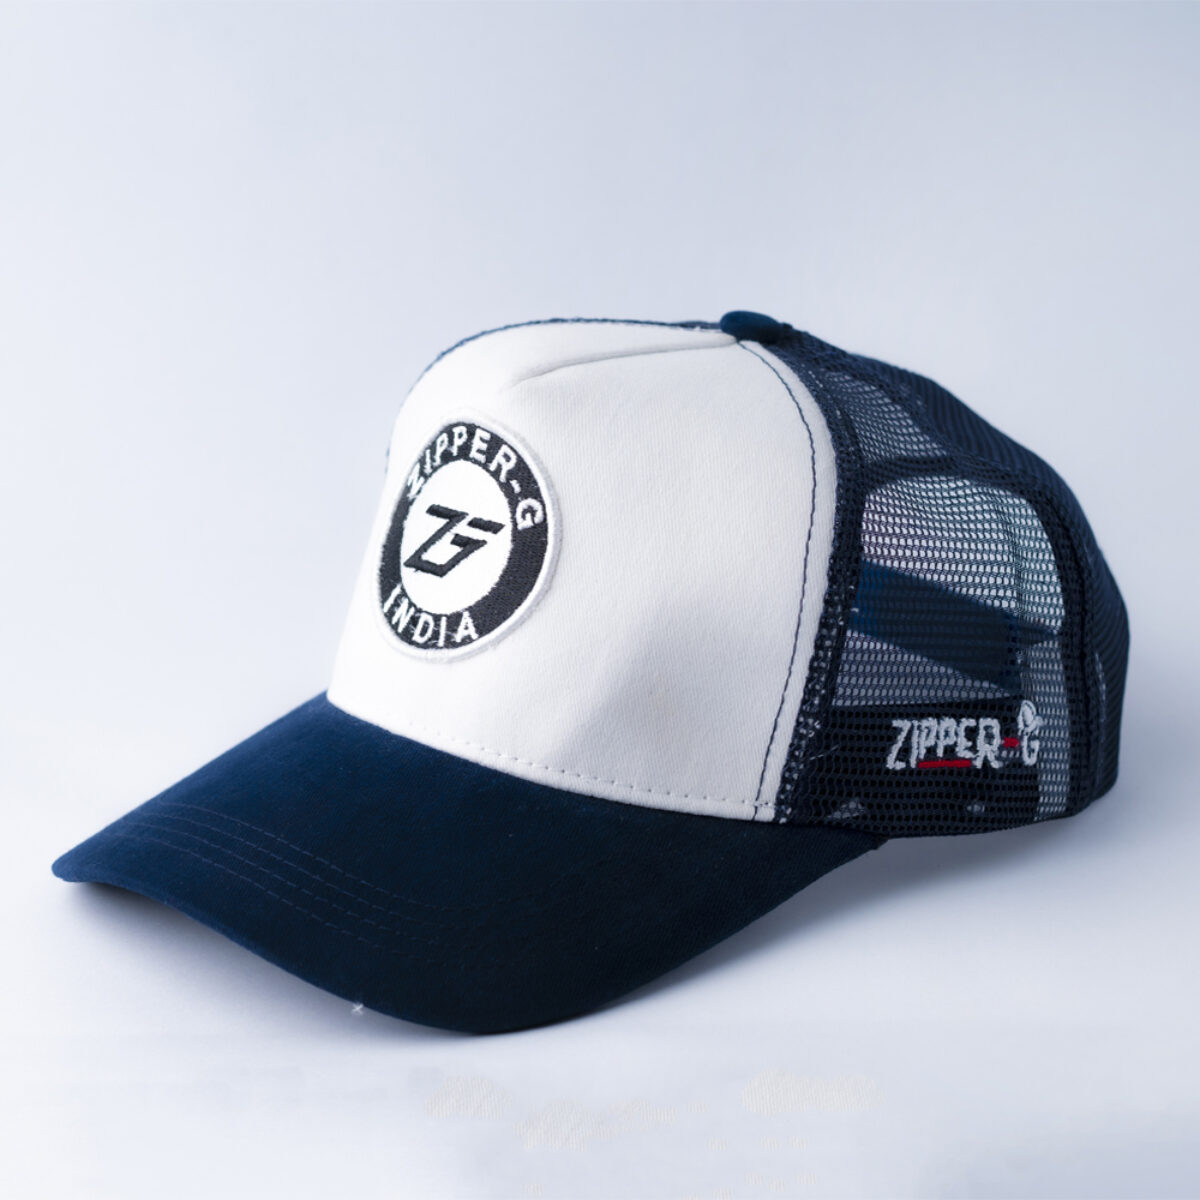 Buy Trucker Hat for Men & Women Online at Best Prices - Zipper-G